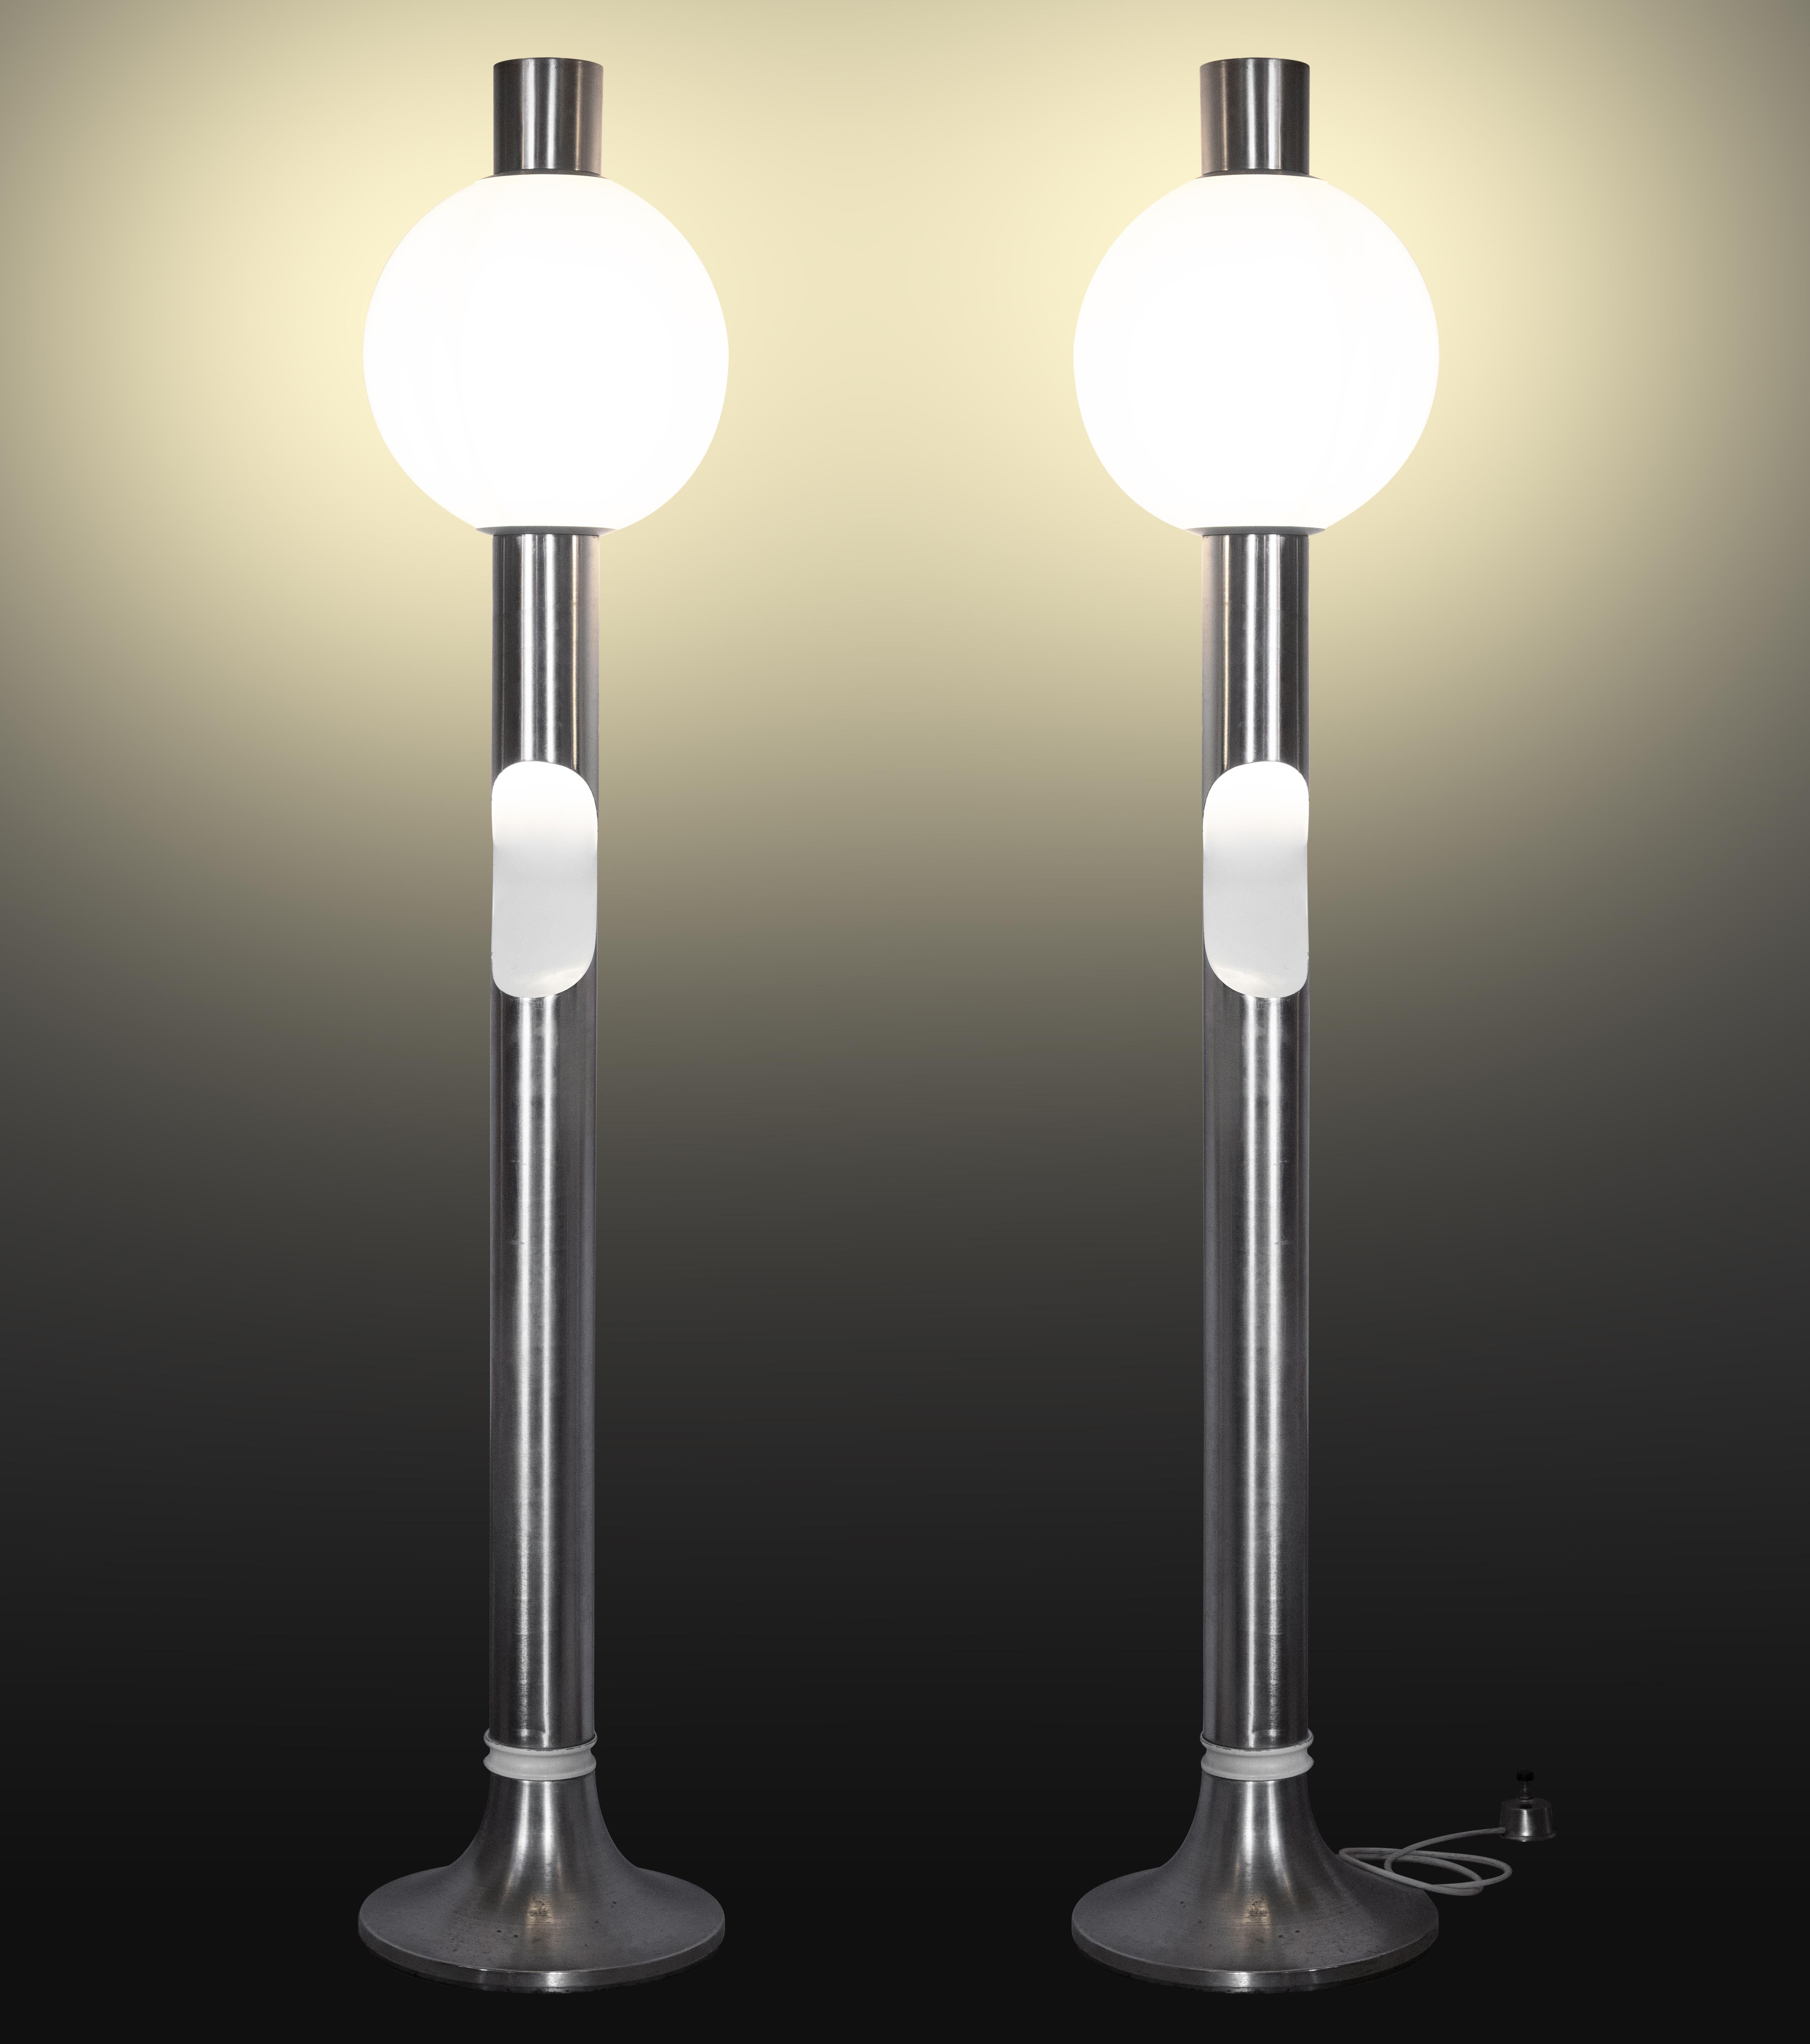 Das Paar Stehlampen ist ein Original aus den 1970er Jahren von Angelo Brotto (Venedig, 1914 - Campiglia Marittina, 2002).

Erstellt für Esperia.

Stahl und Glas. 

Neuwertiger Zustand.

Gesamtabmessungen: 180 x 35 x 35 cm. Das Gewicht ist ein